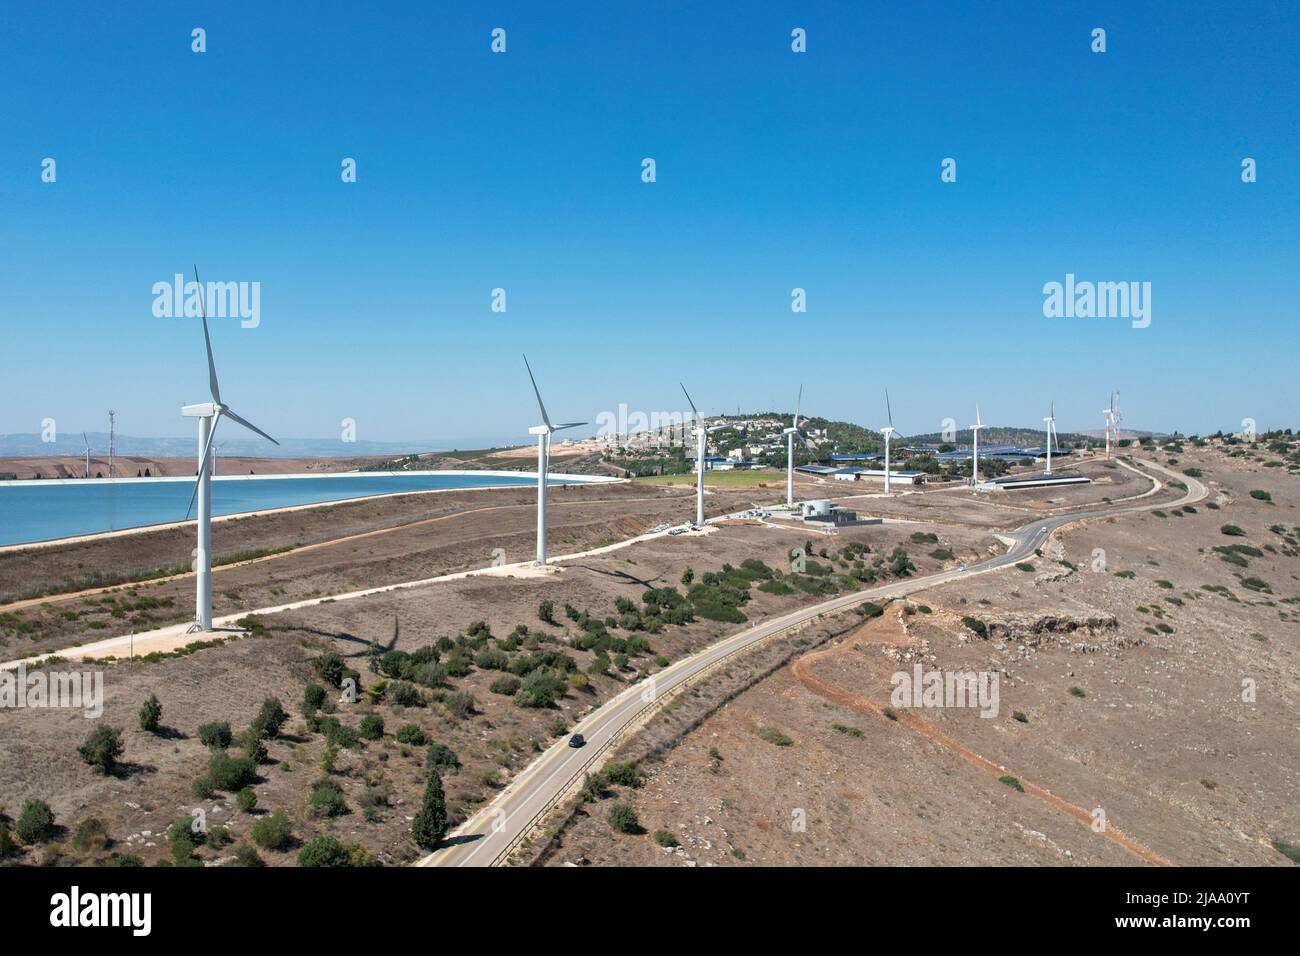 Les éoliennes génèrent de l'énergie propre. Banque D'Images